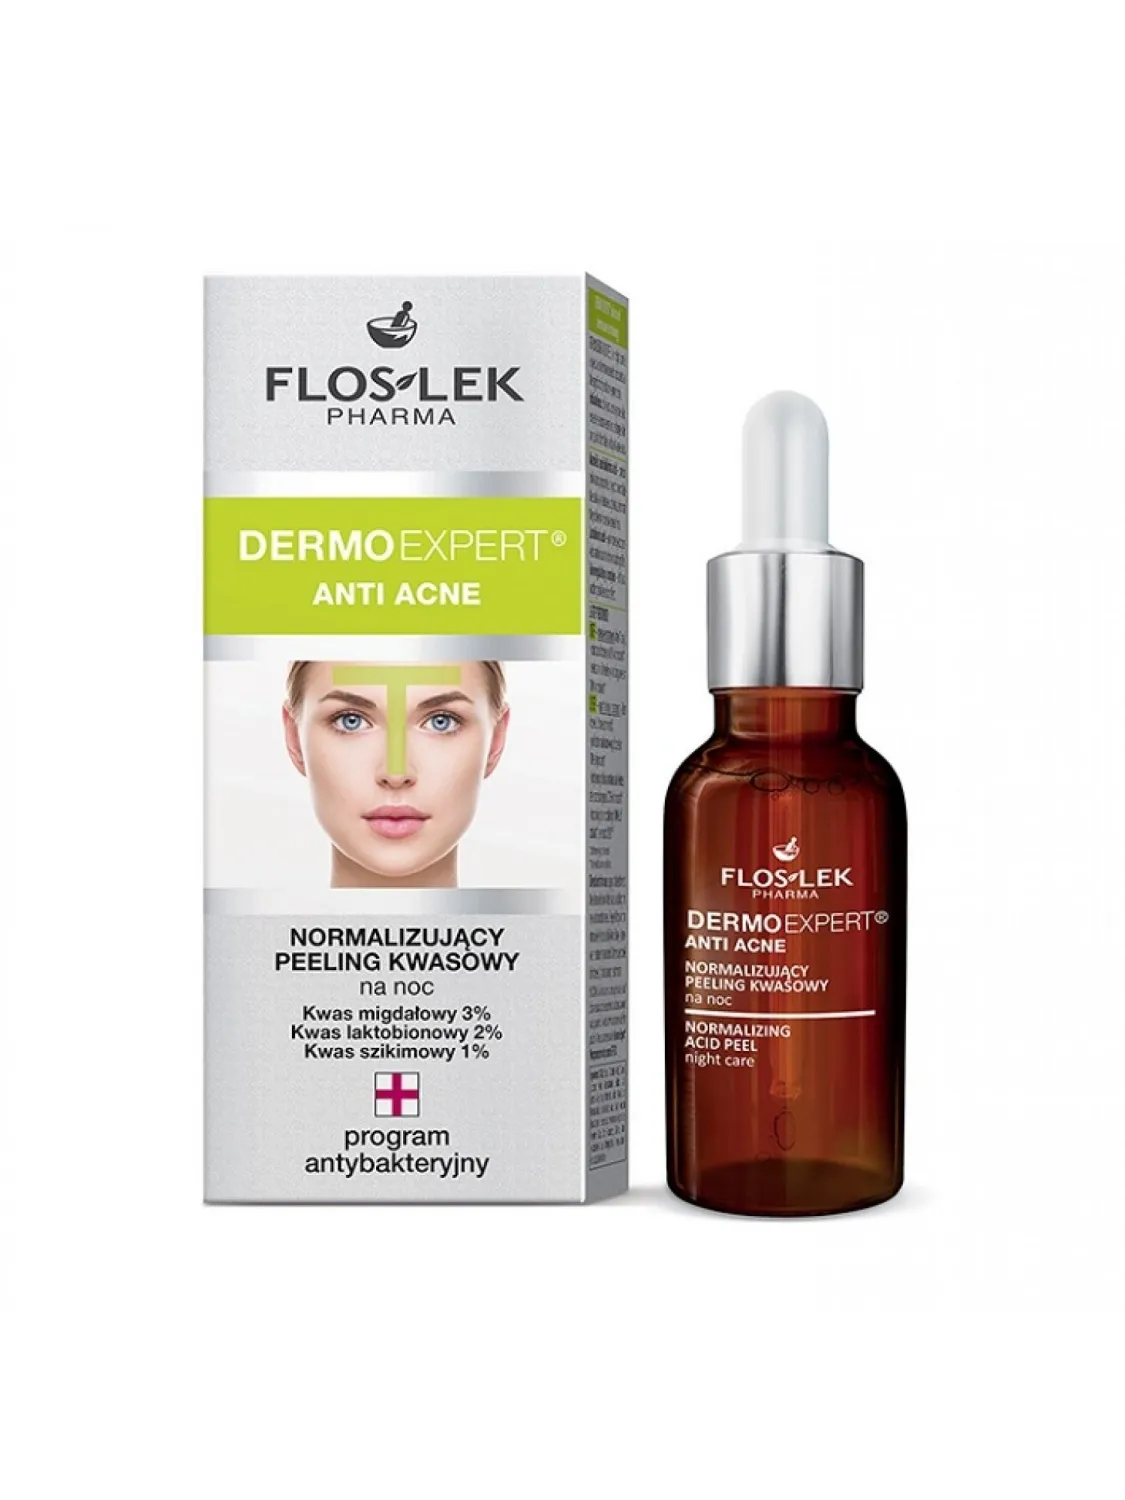 Flos-Lek Dermo Expert Anti Acne, Normalizujący peeling kwasowy na noc, 30 ml